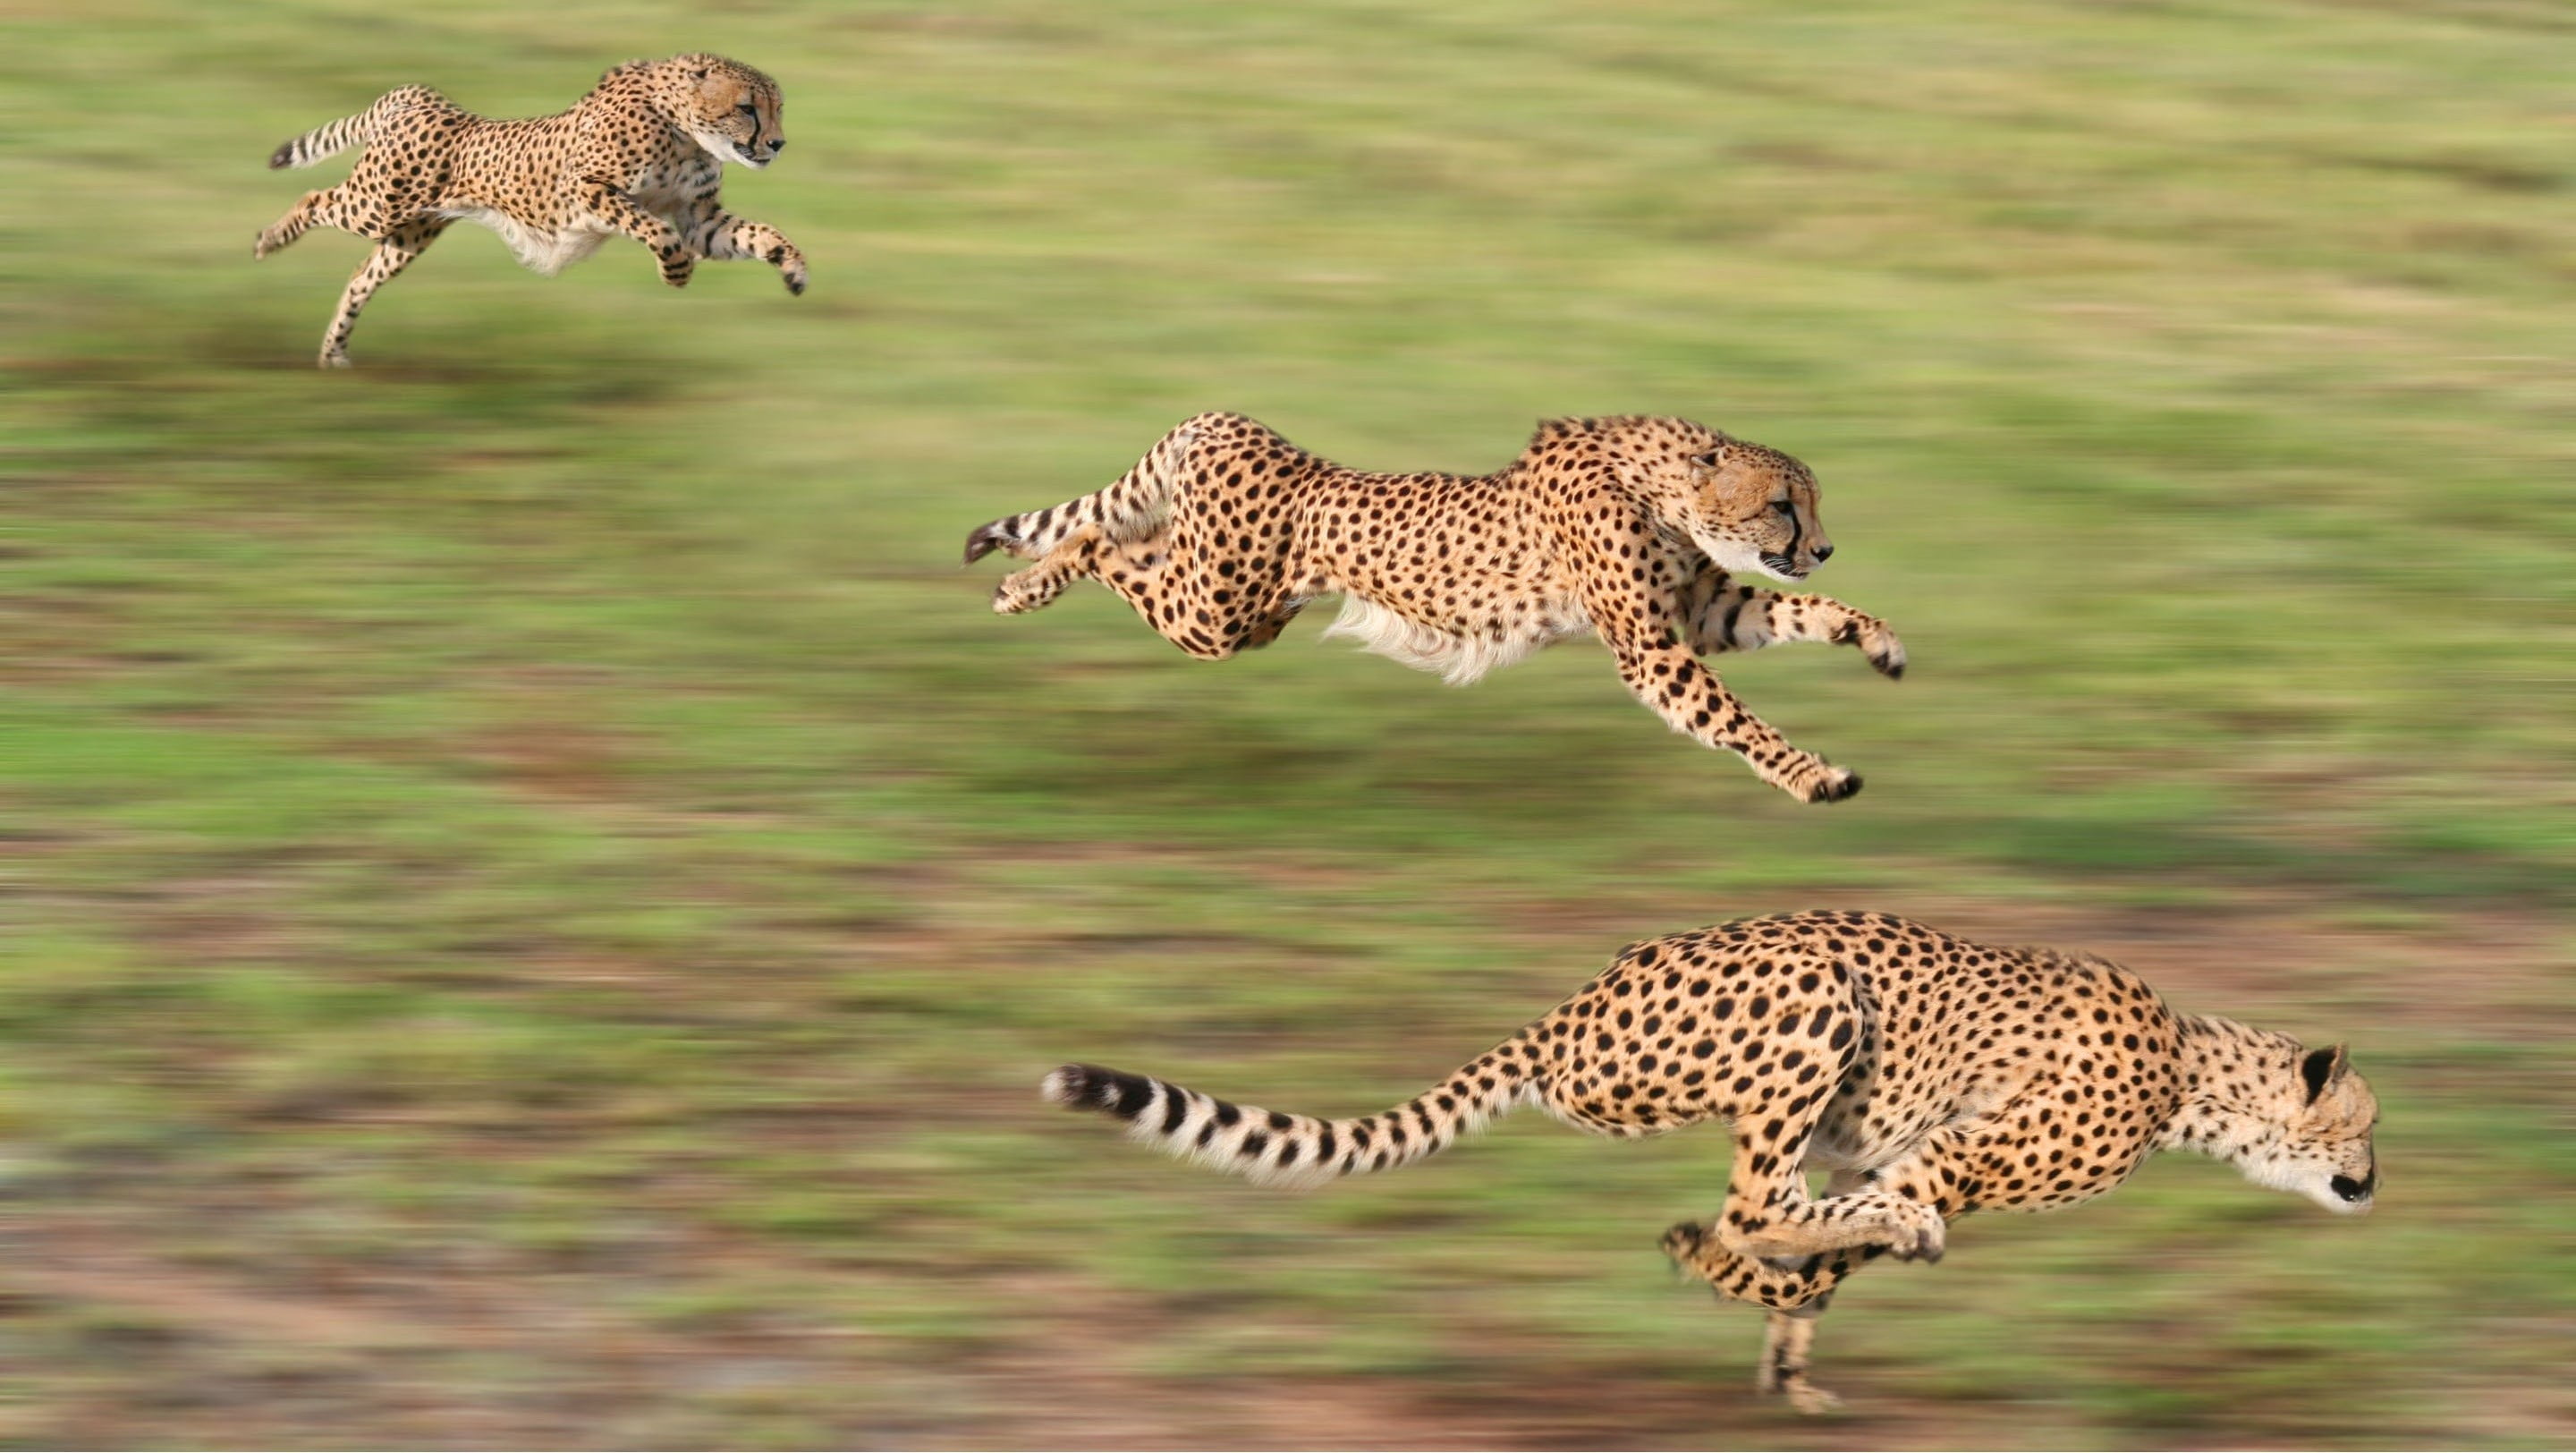 three cheetahs, animals, cheetahs, running, motion blur